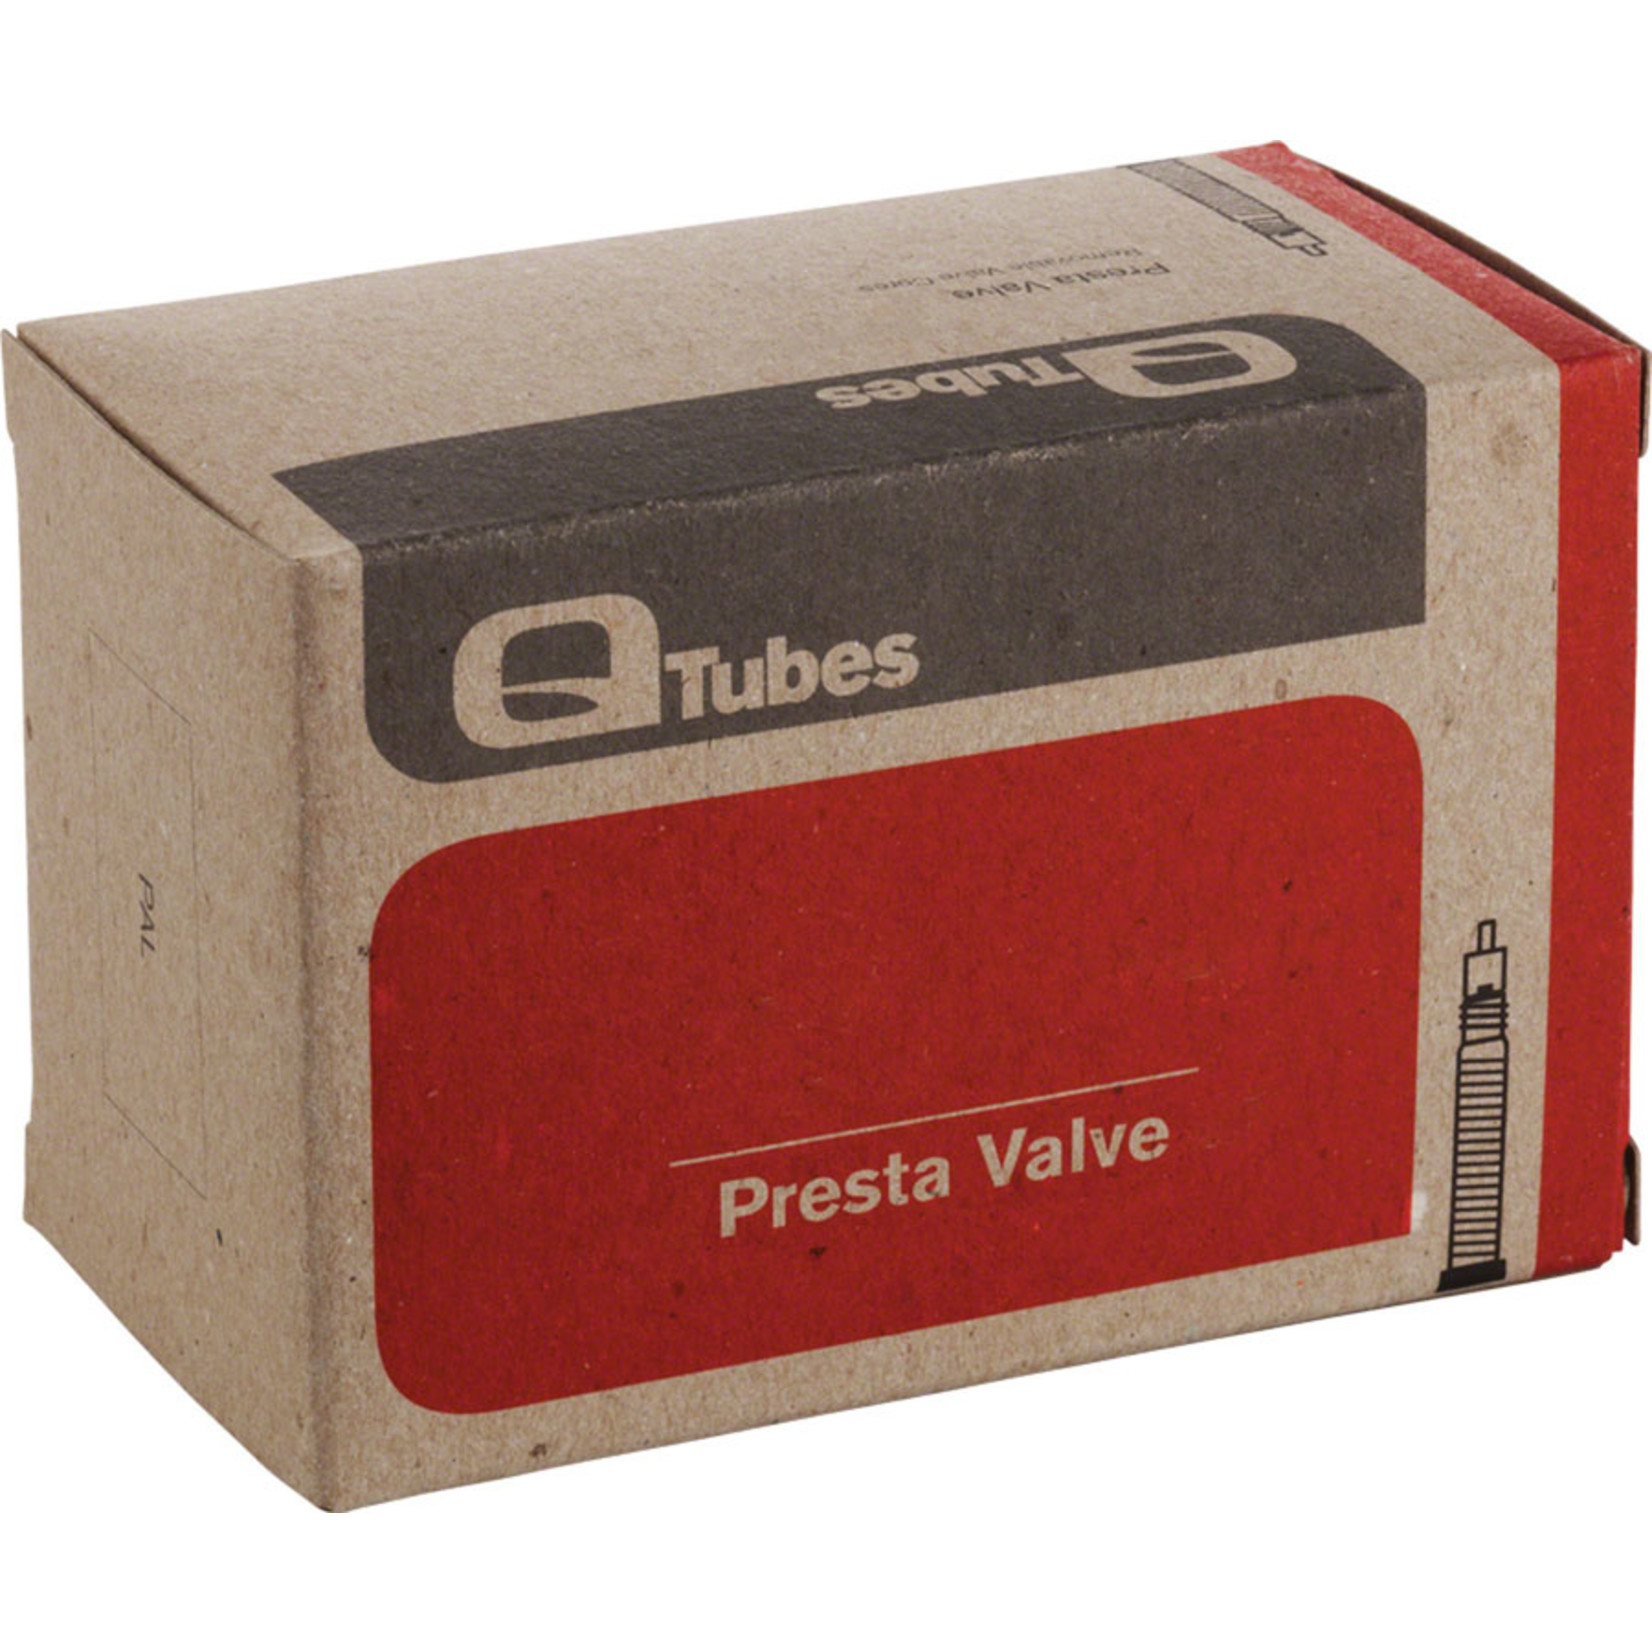 Q-Tubes Teravail Standard Tube 20 x 1.75 - 2.35 32mm Presta Valve